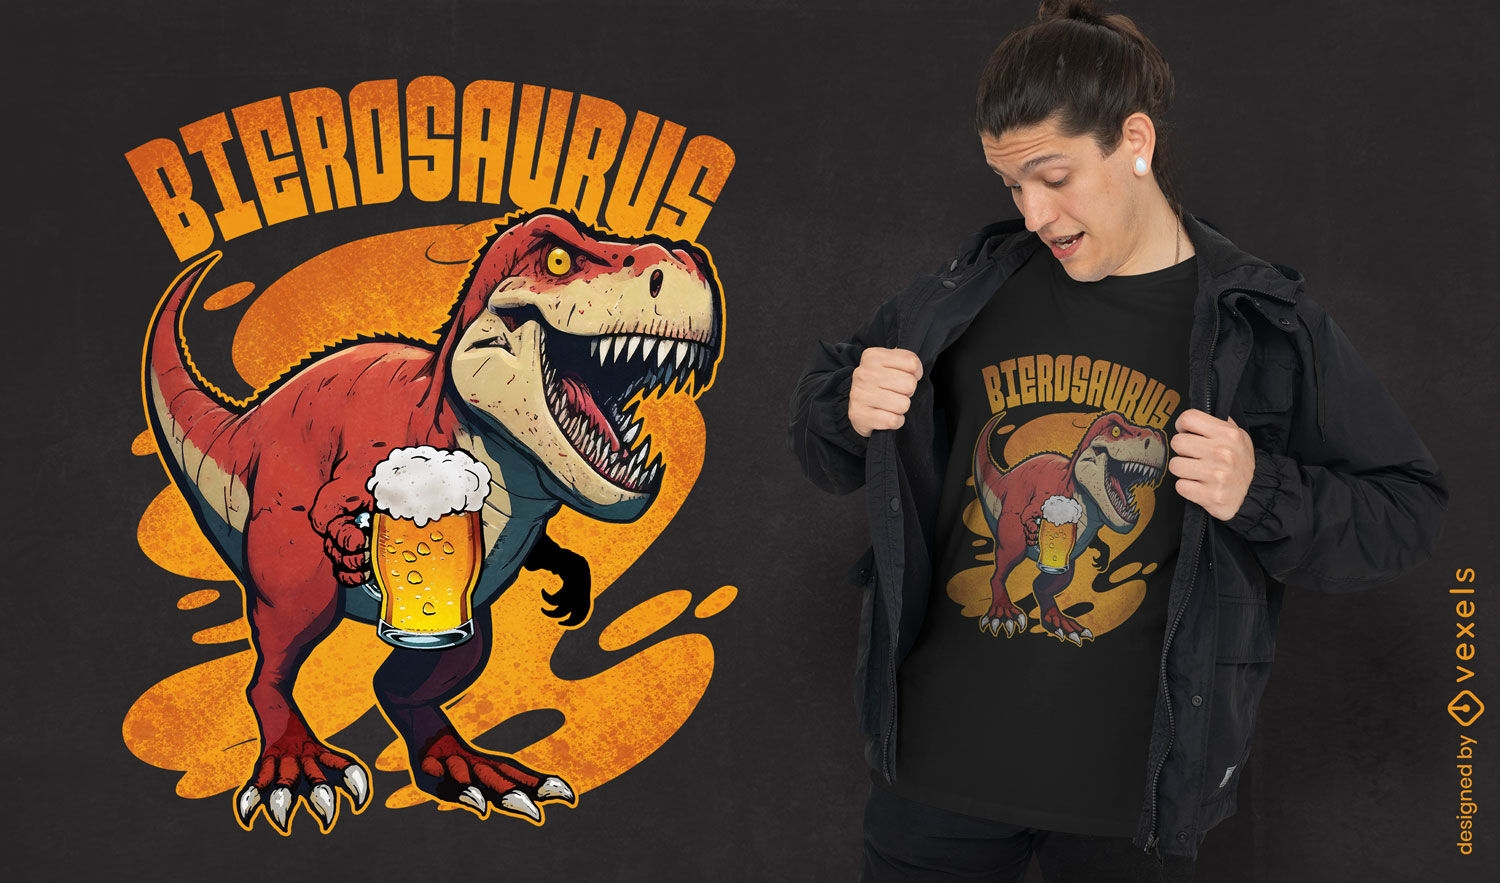 Dise?o de camiseta de dinosaurio bebiendo cerveza.